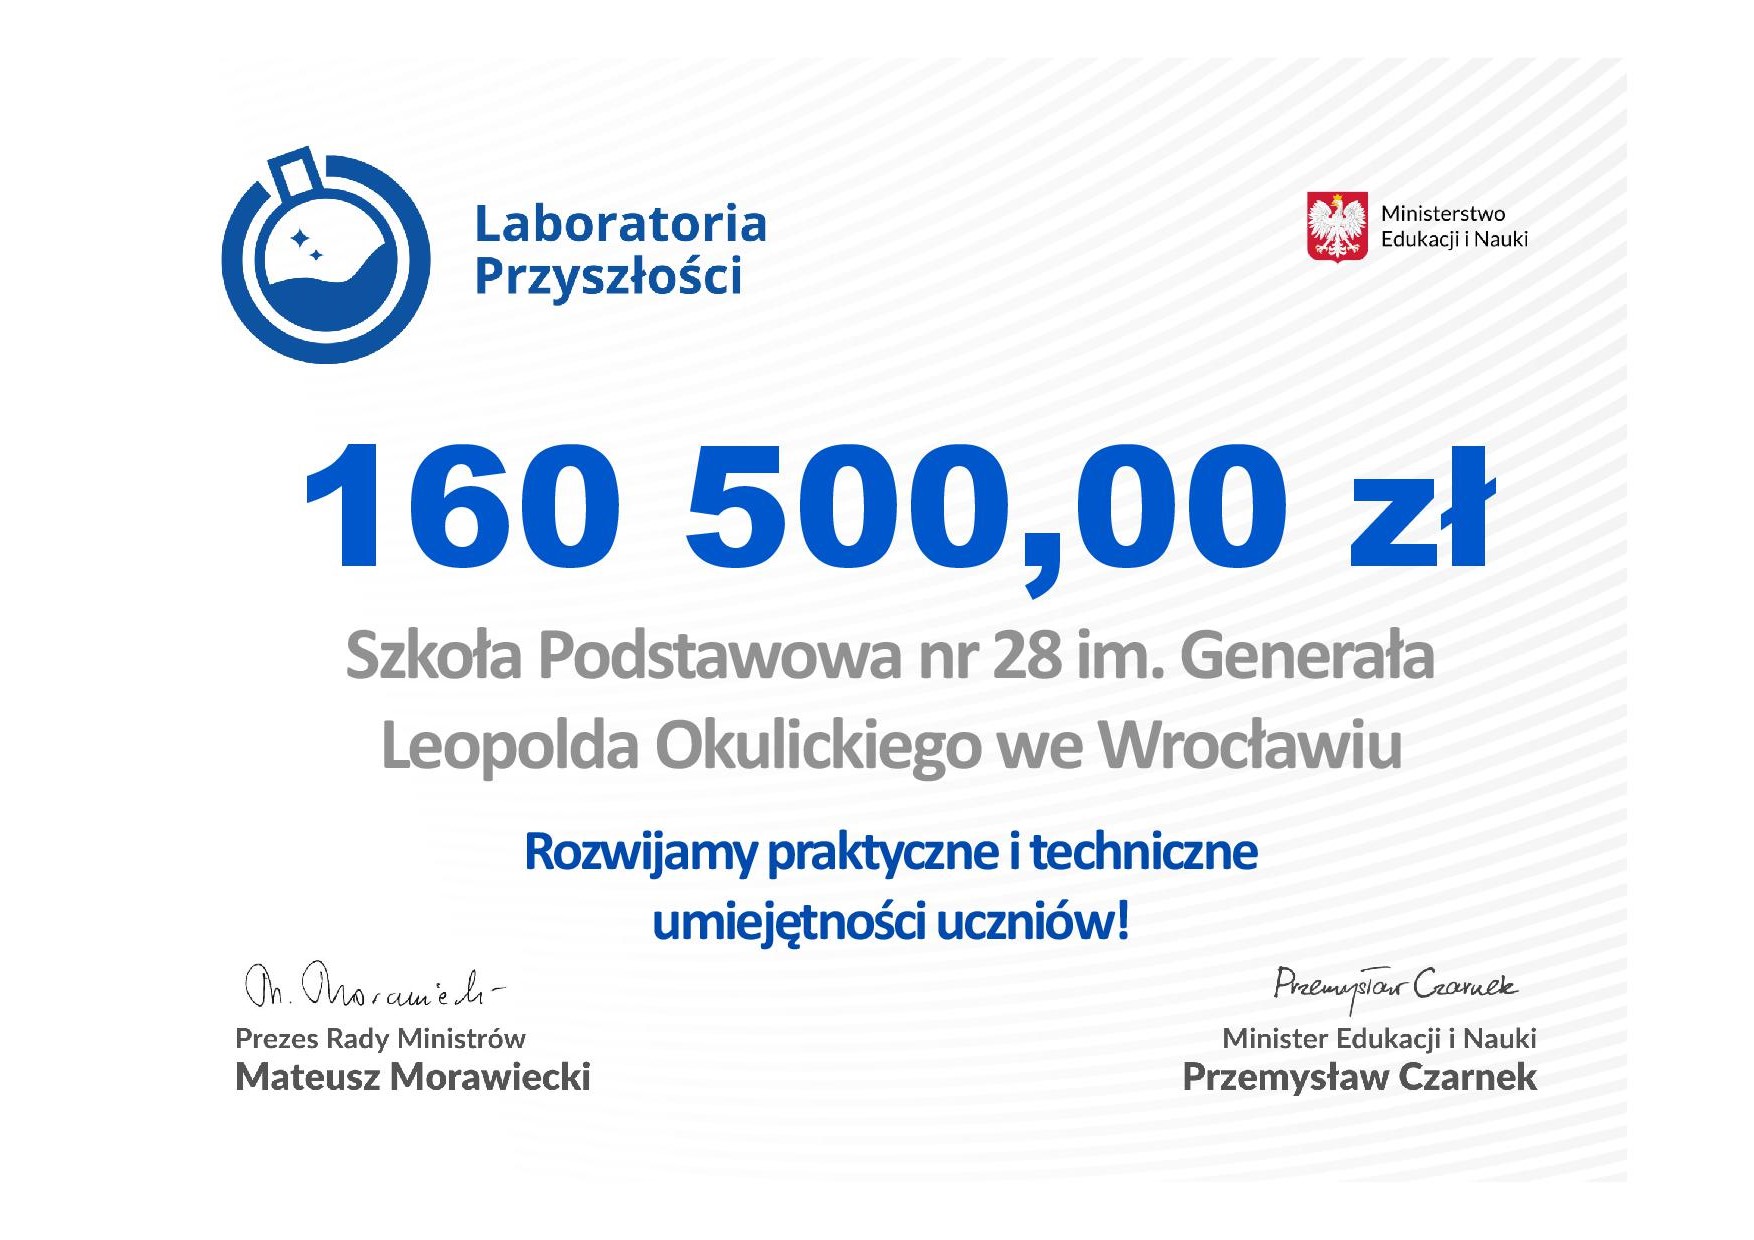 Laboratoria Przyszłości - dofinansowanie na kwotę 160500 zł